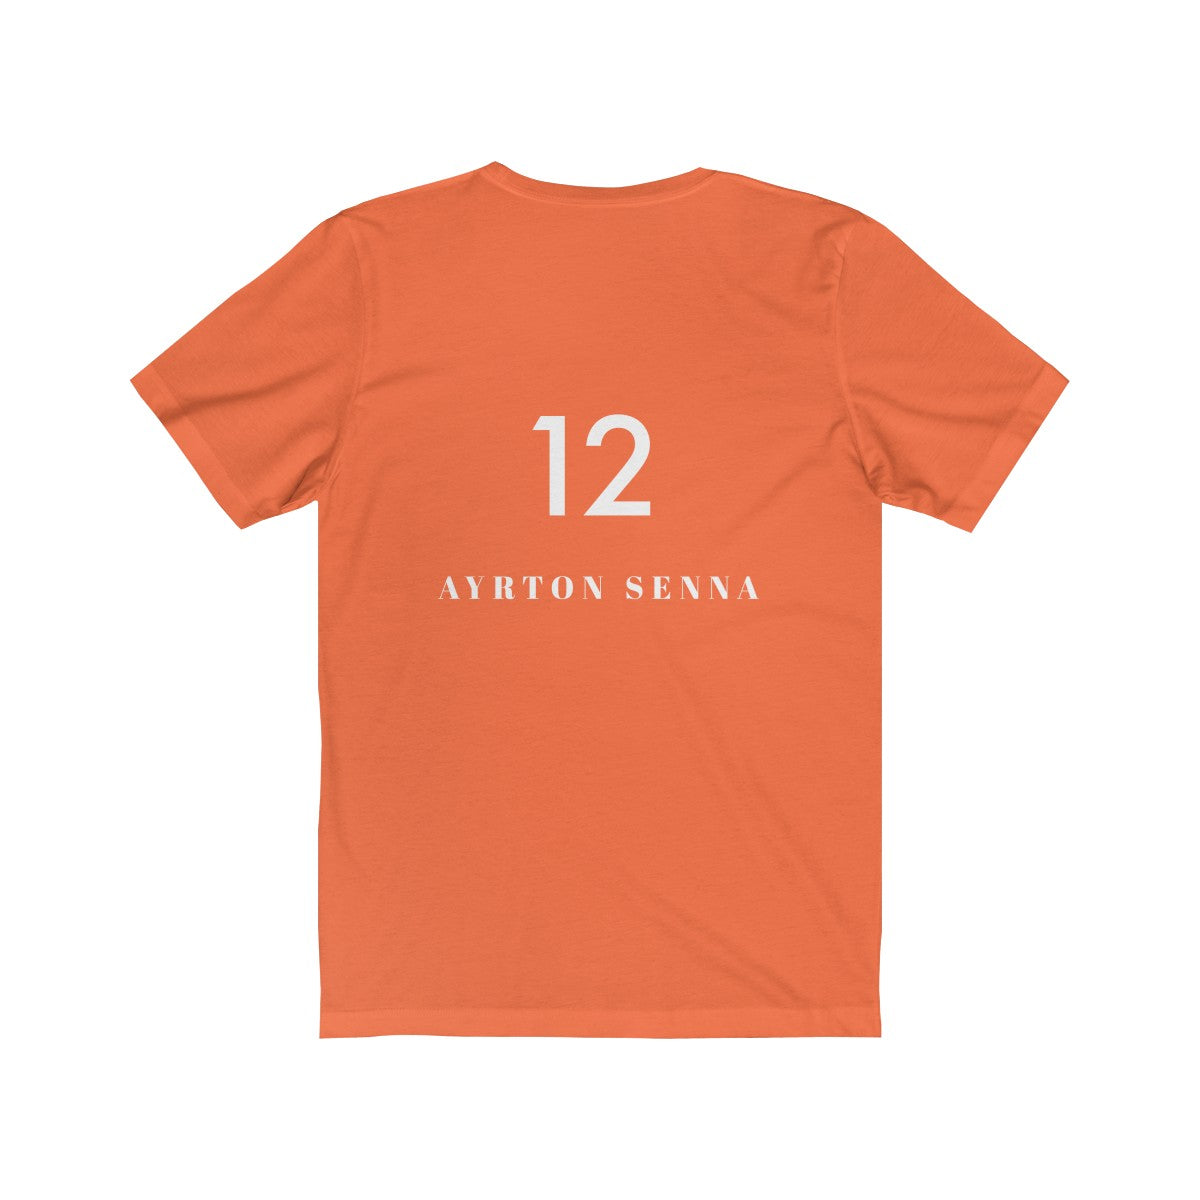 🔻AYRTON SENNA on the back #12 - Unisex Jersey Short Sleeve Tee